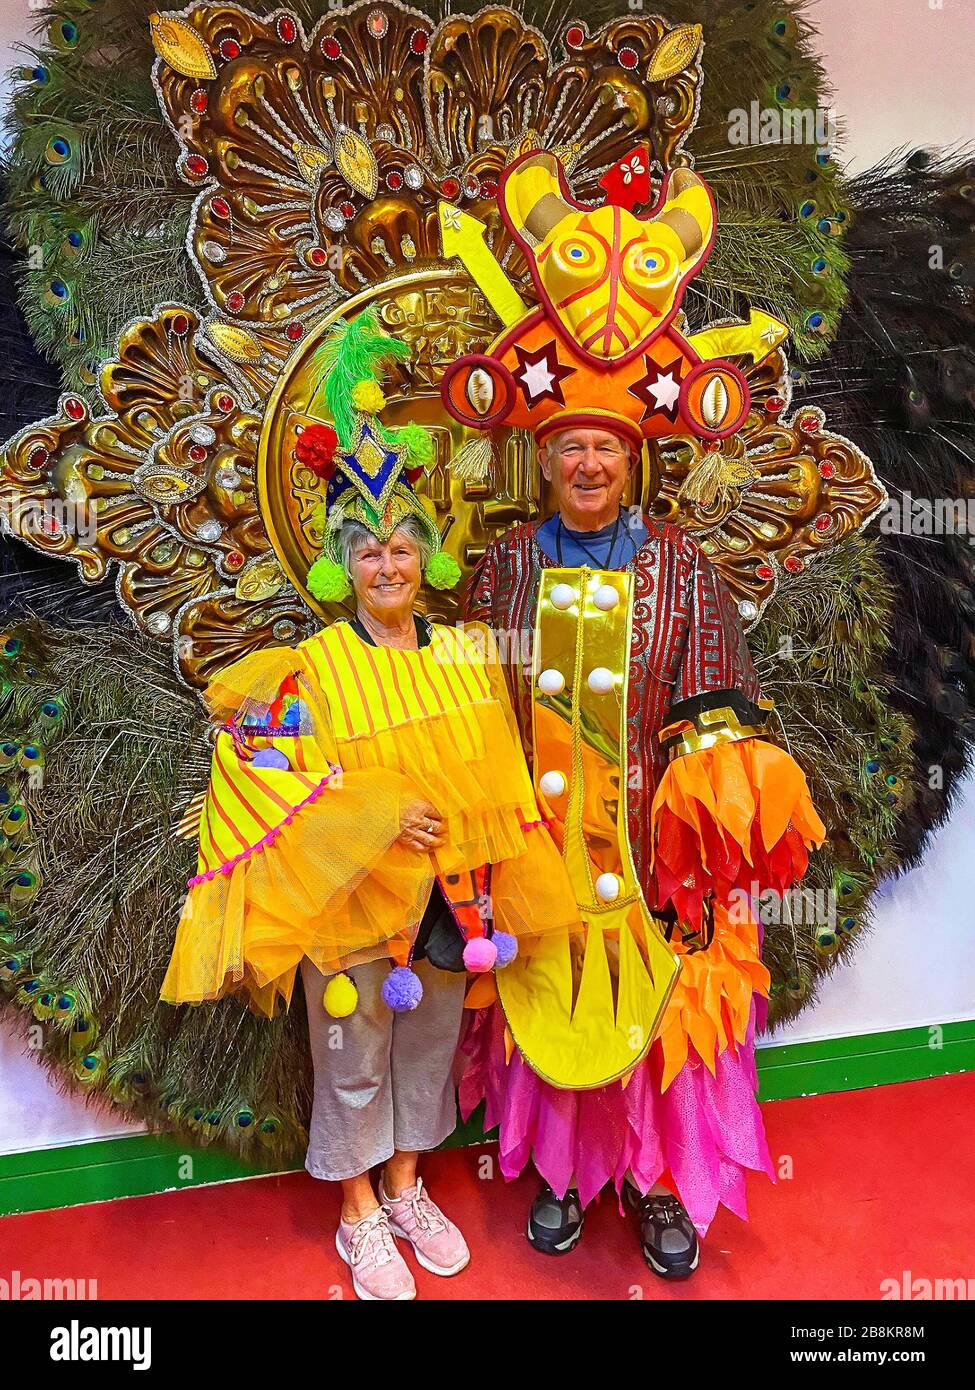 Couple en costume de Carnaval, femme, homme, coloré, décoratif, festif, orné, touristes, amusement, expérience, école de samba, fond de paon, Rio de Jan Banque D'Images